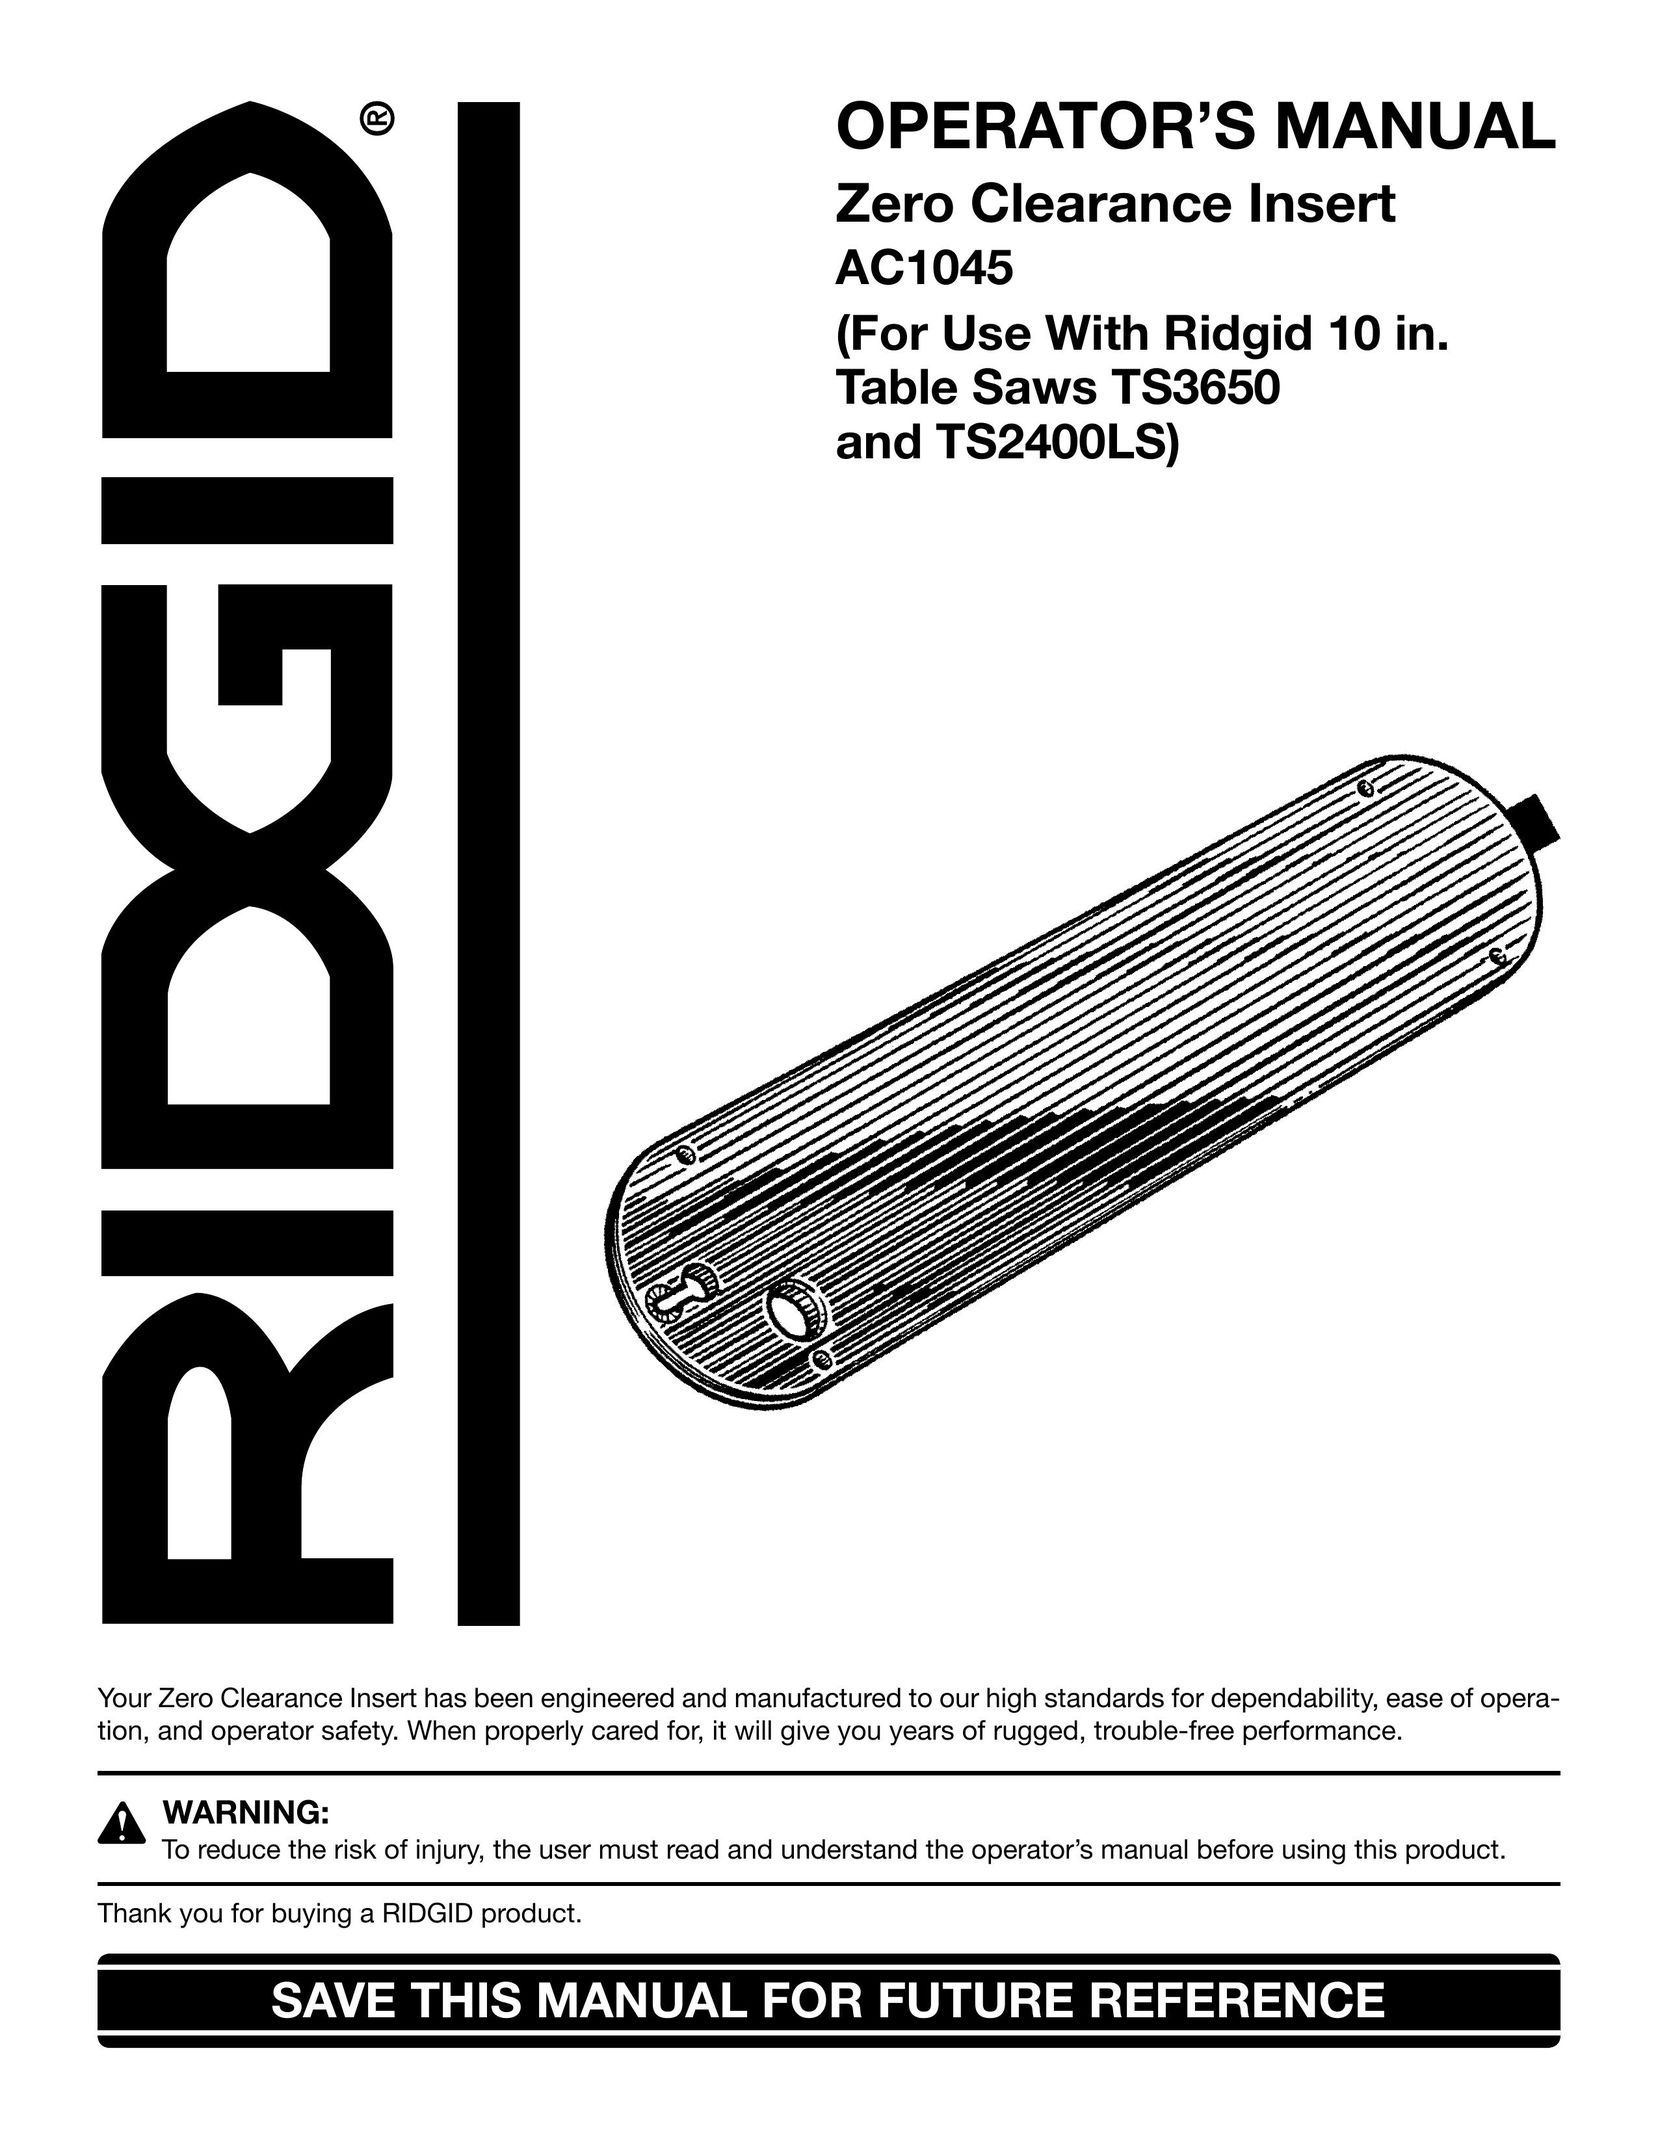 RIDGID TS2400LS Saw User Manual